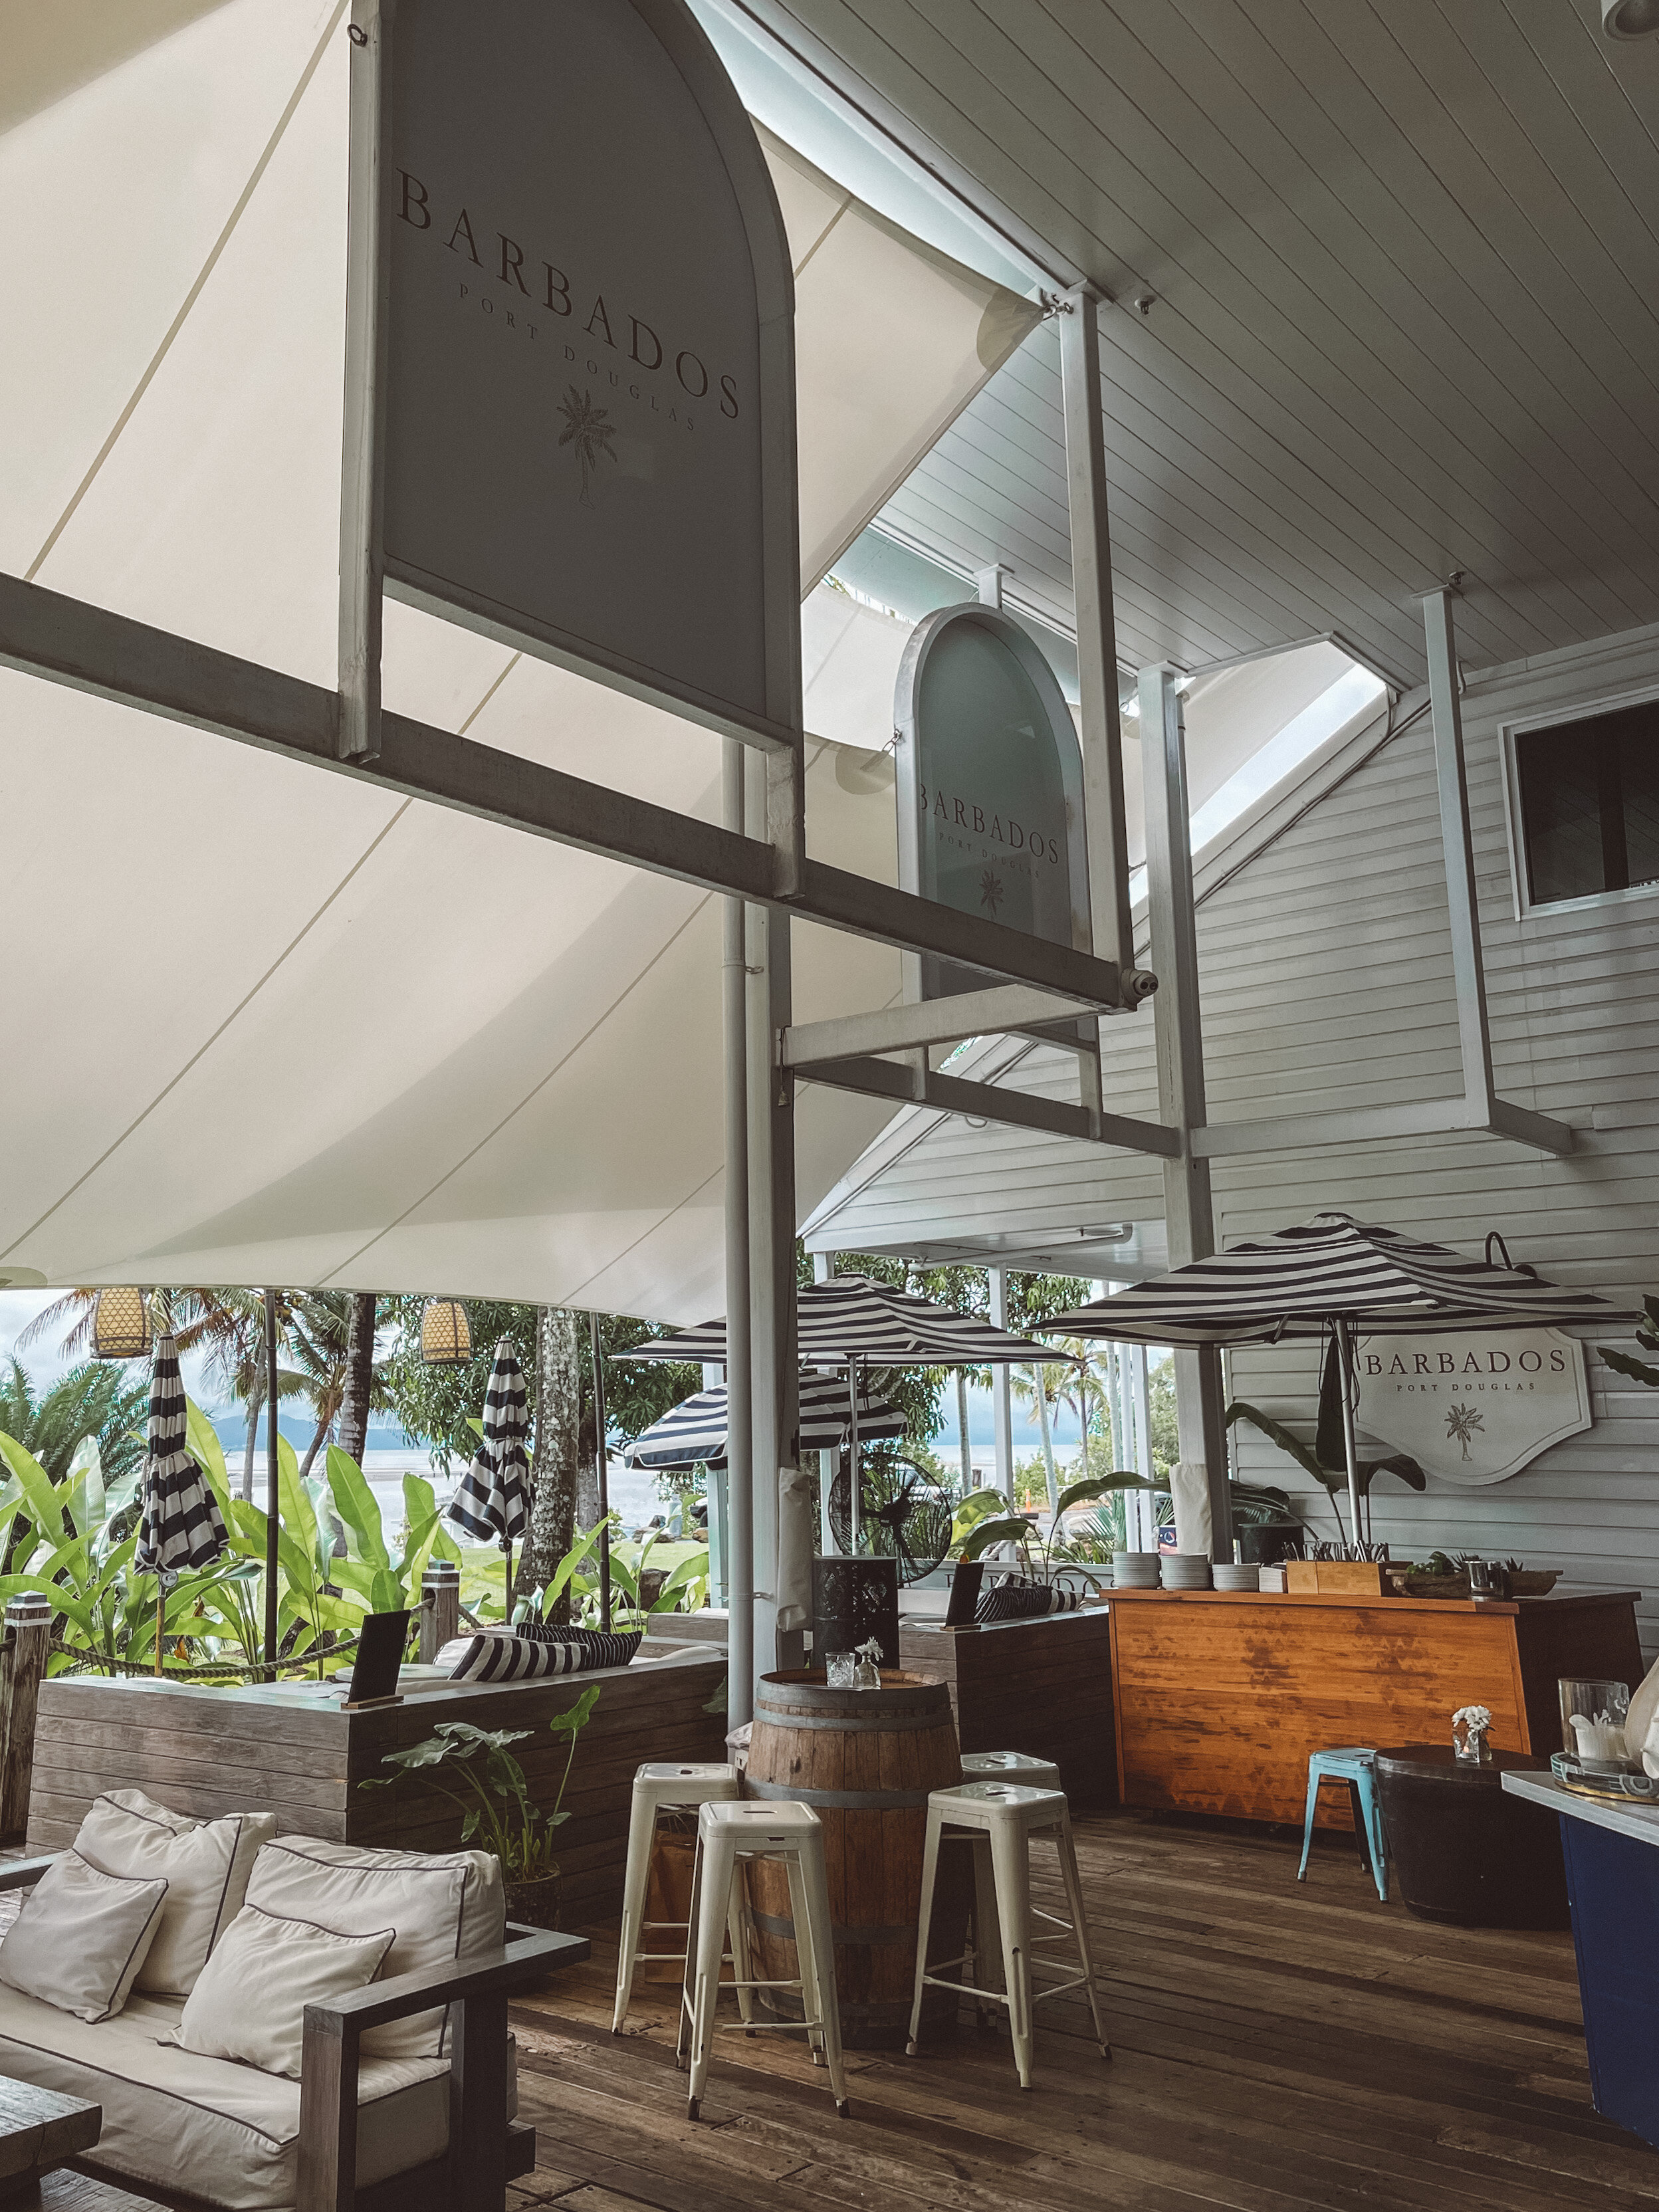 Les tables et la terrasse du restaurant Barbados - Port Douglas - Tropical North Queensland (QLD) - Australie